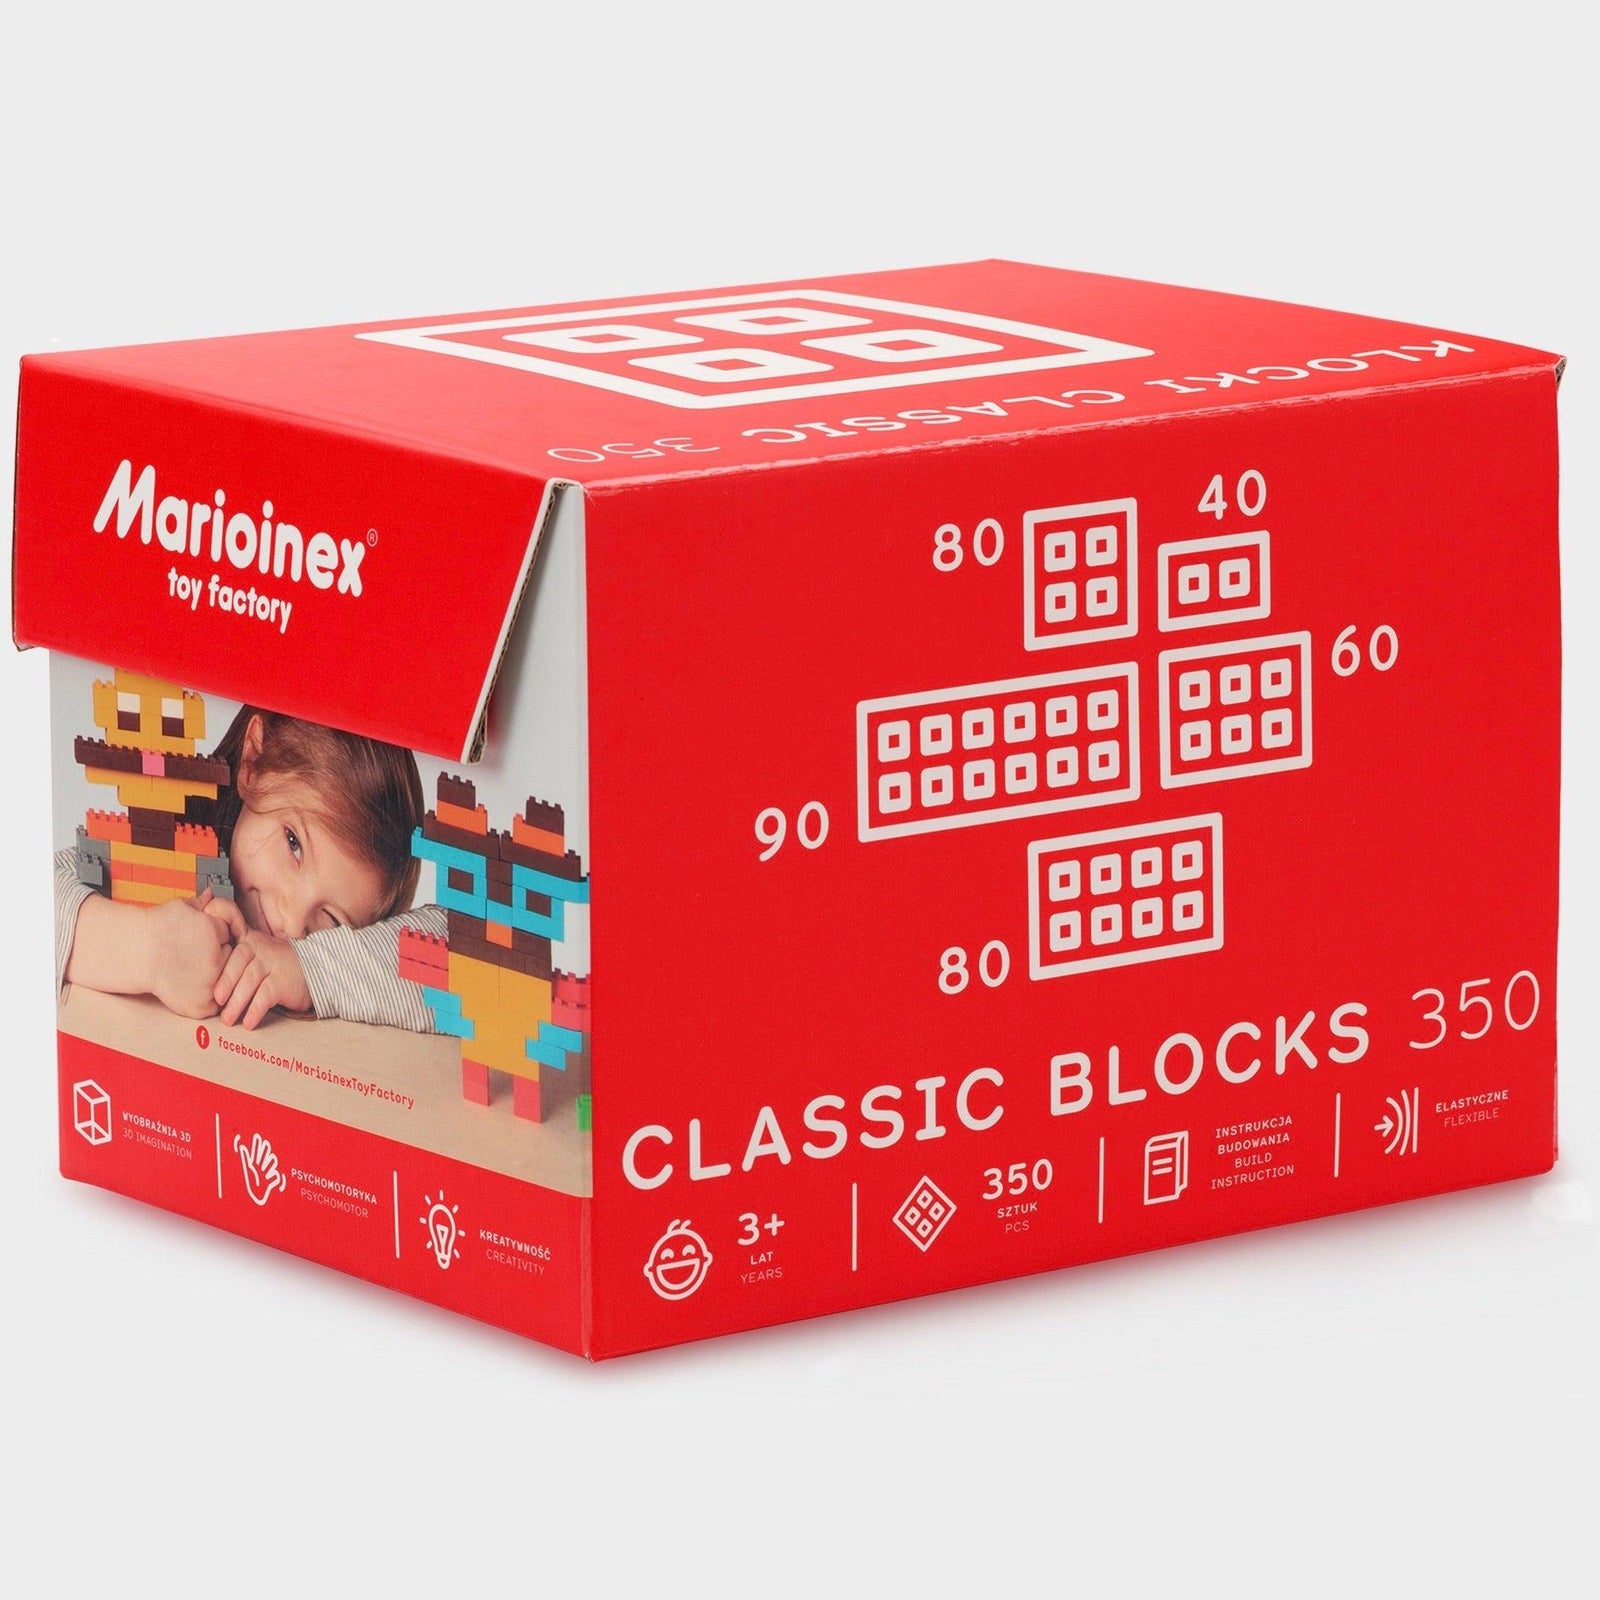 Marioinex: Classic 350 blocks